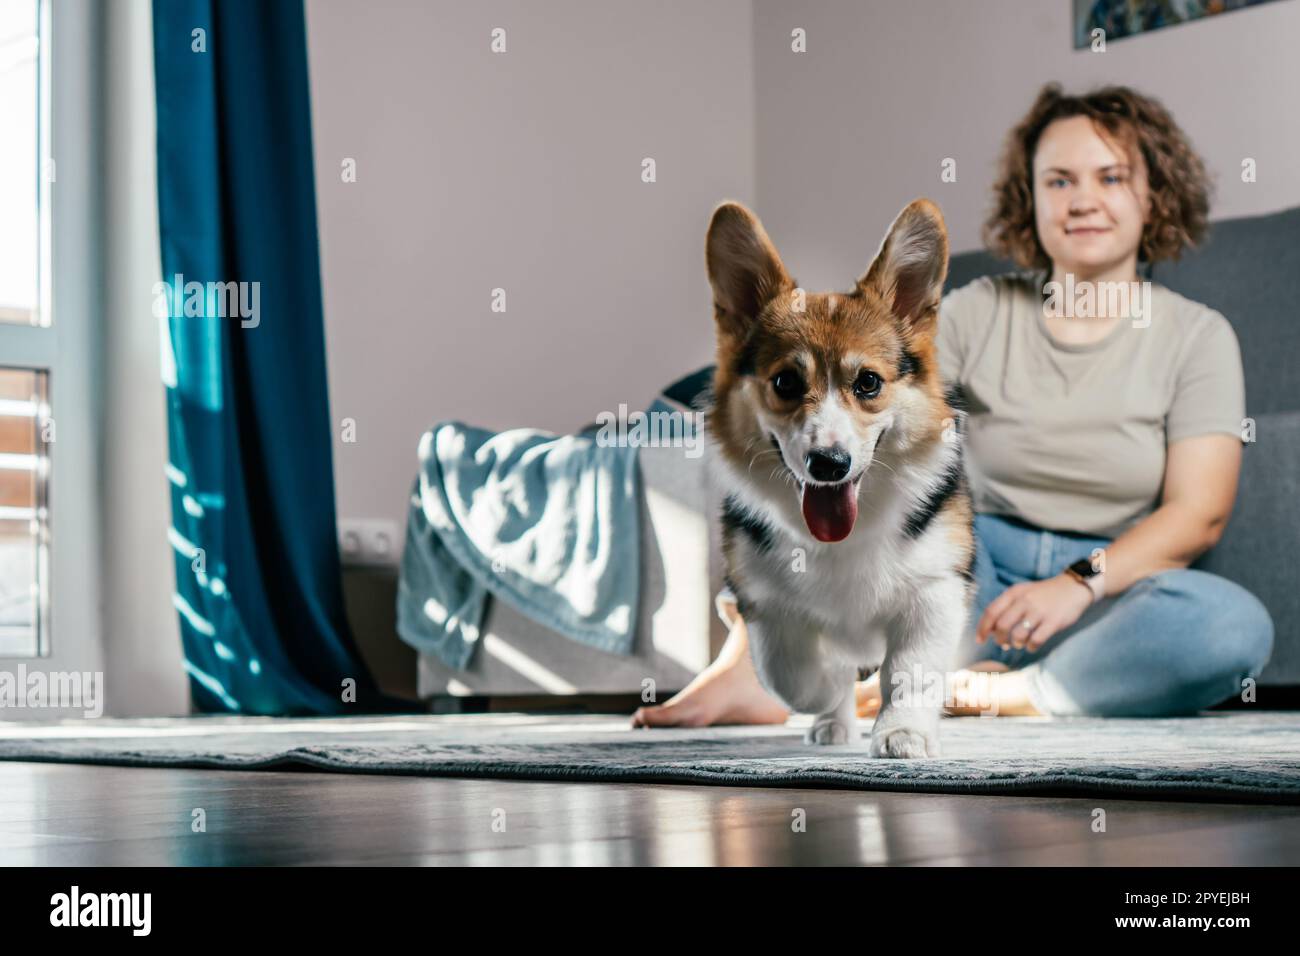 Donna riccamente allegra con corgi di cane seduta, rilassante e giocando sul pavimento a casa. PET fur attivo che corre verso la fotocamera Foto Stock